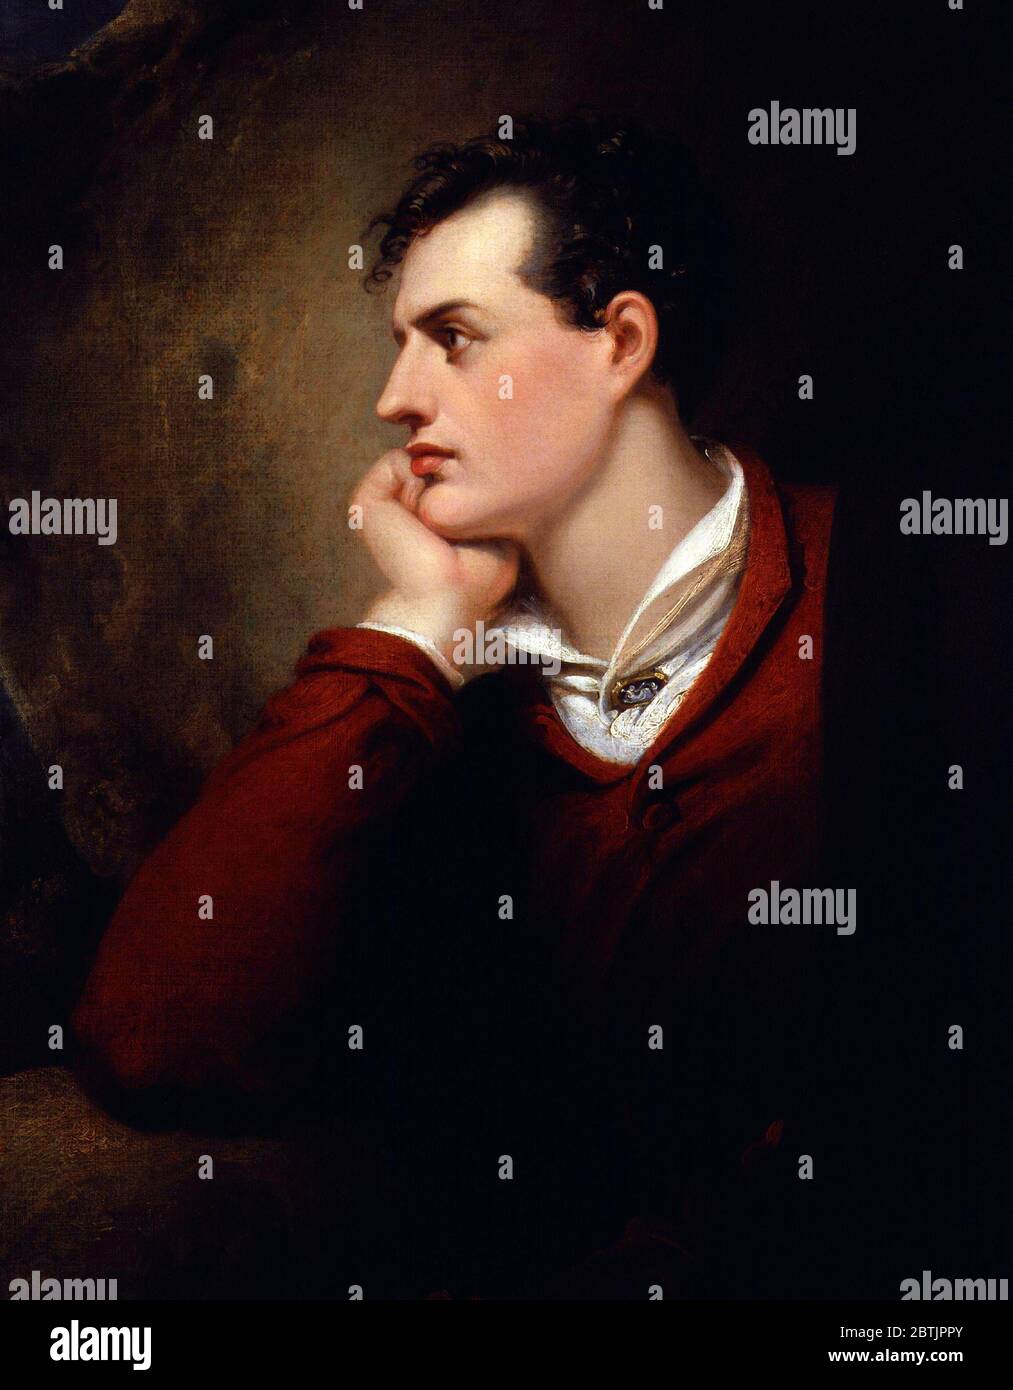 Portrait de Lord Byron par Richard Westout, huile sur toile, 1813. George Gordon Byron, 6e baron Byron (1788-1824), était un poète anglais et figure de premier plan dans le mouvement romantique. Banque D'Images